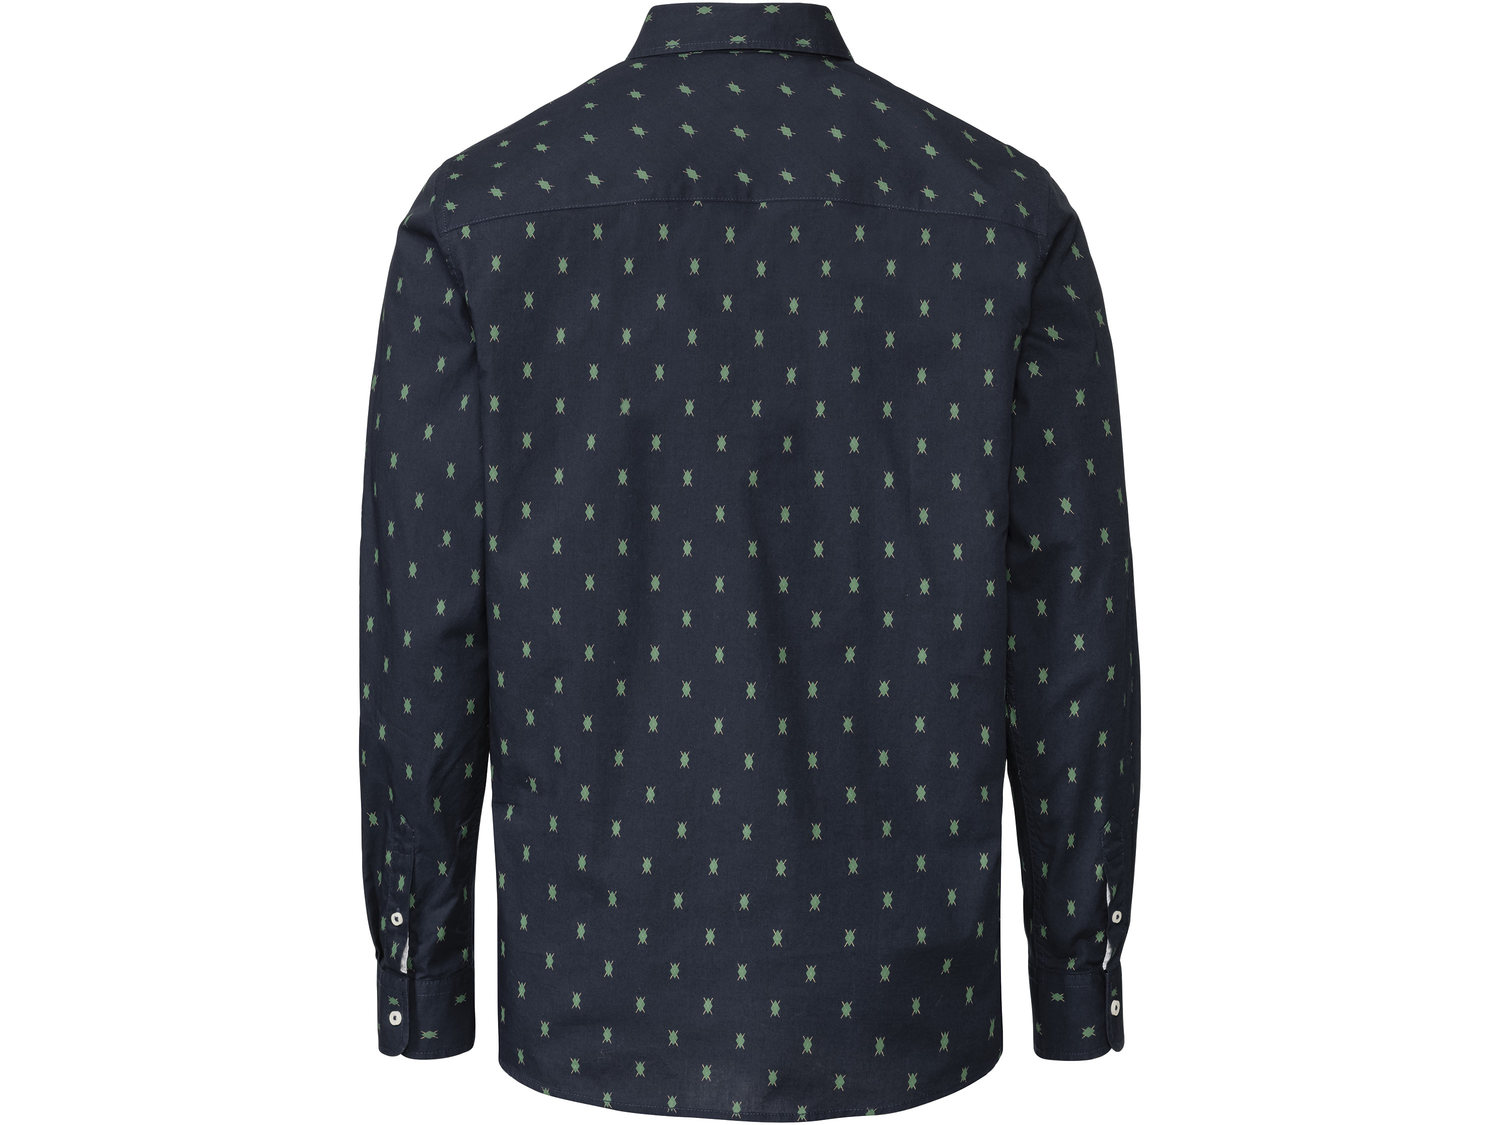 Koszula Livergy, cena 34,99 PLN 
PONADCZASOWA STYLIZACJA
Koszula, kurtka o wyglądzie ...